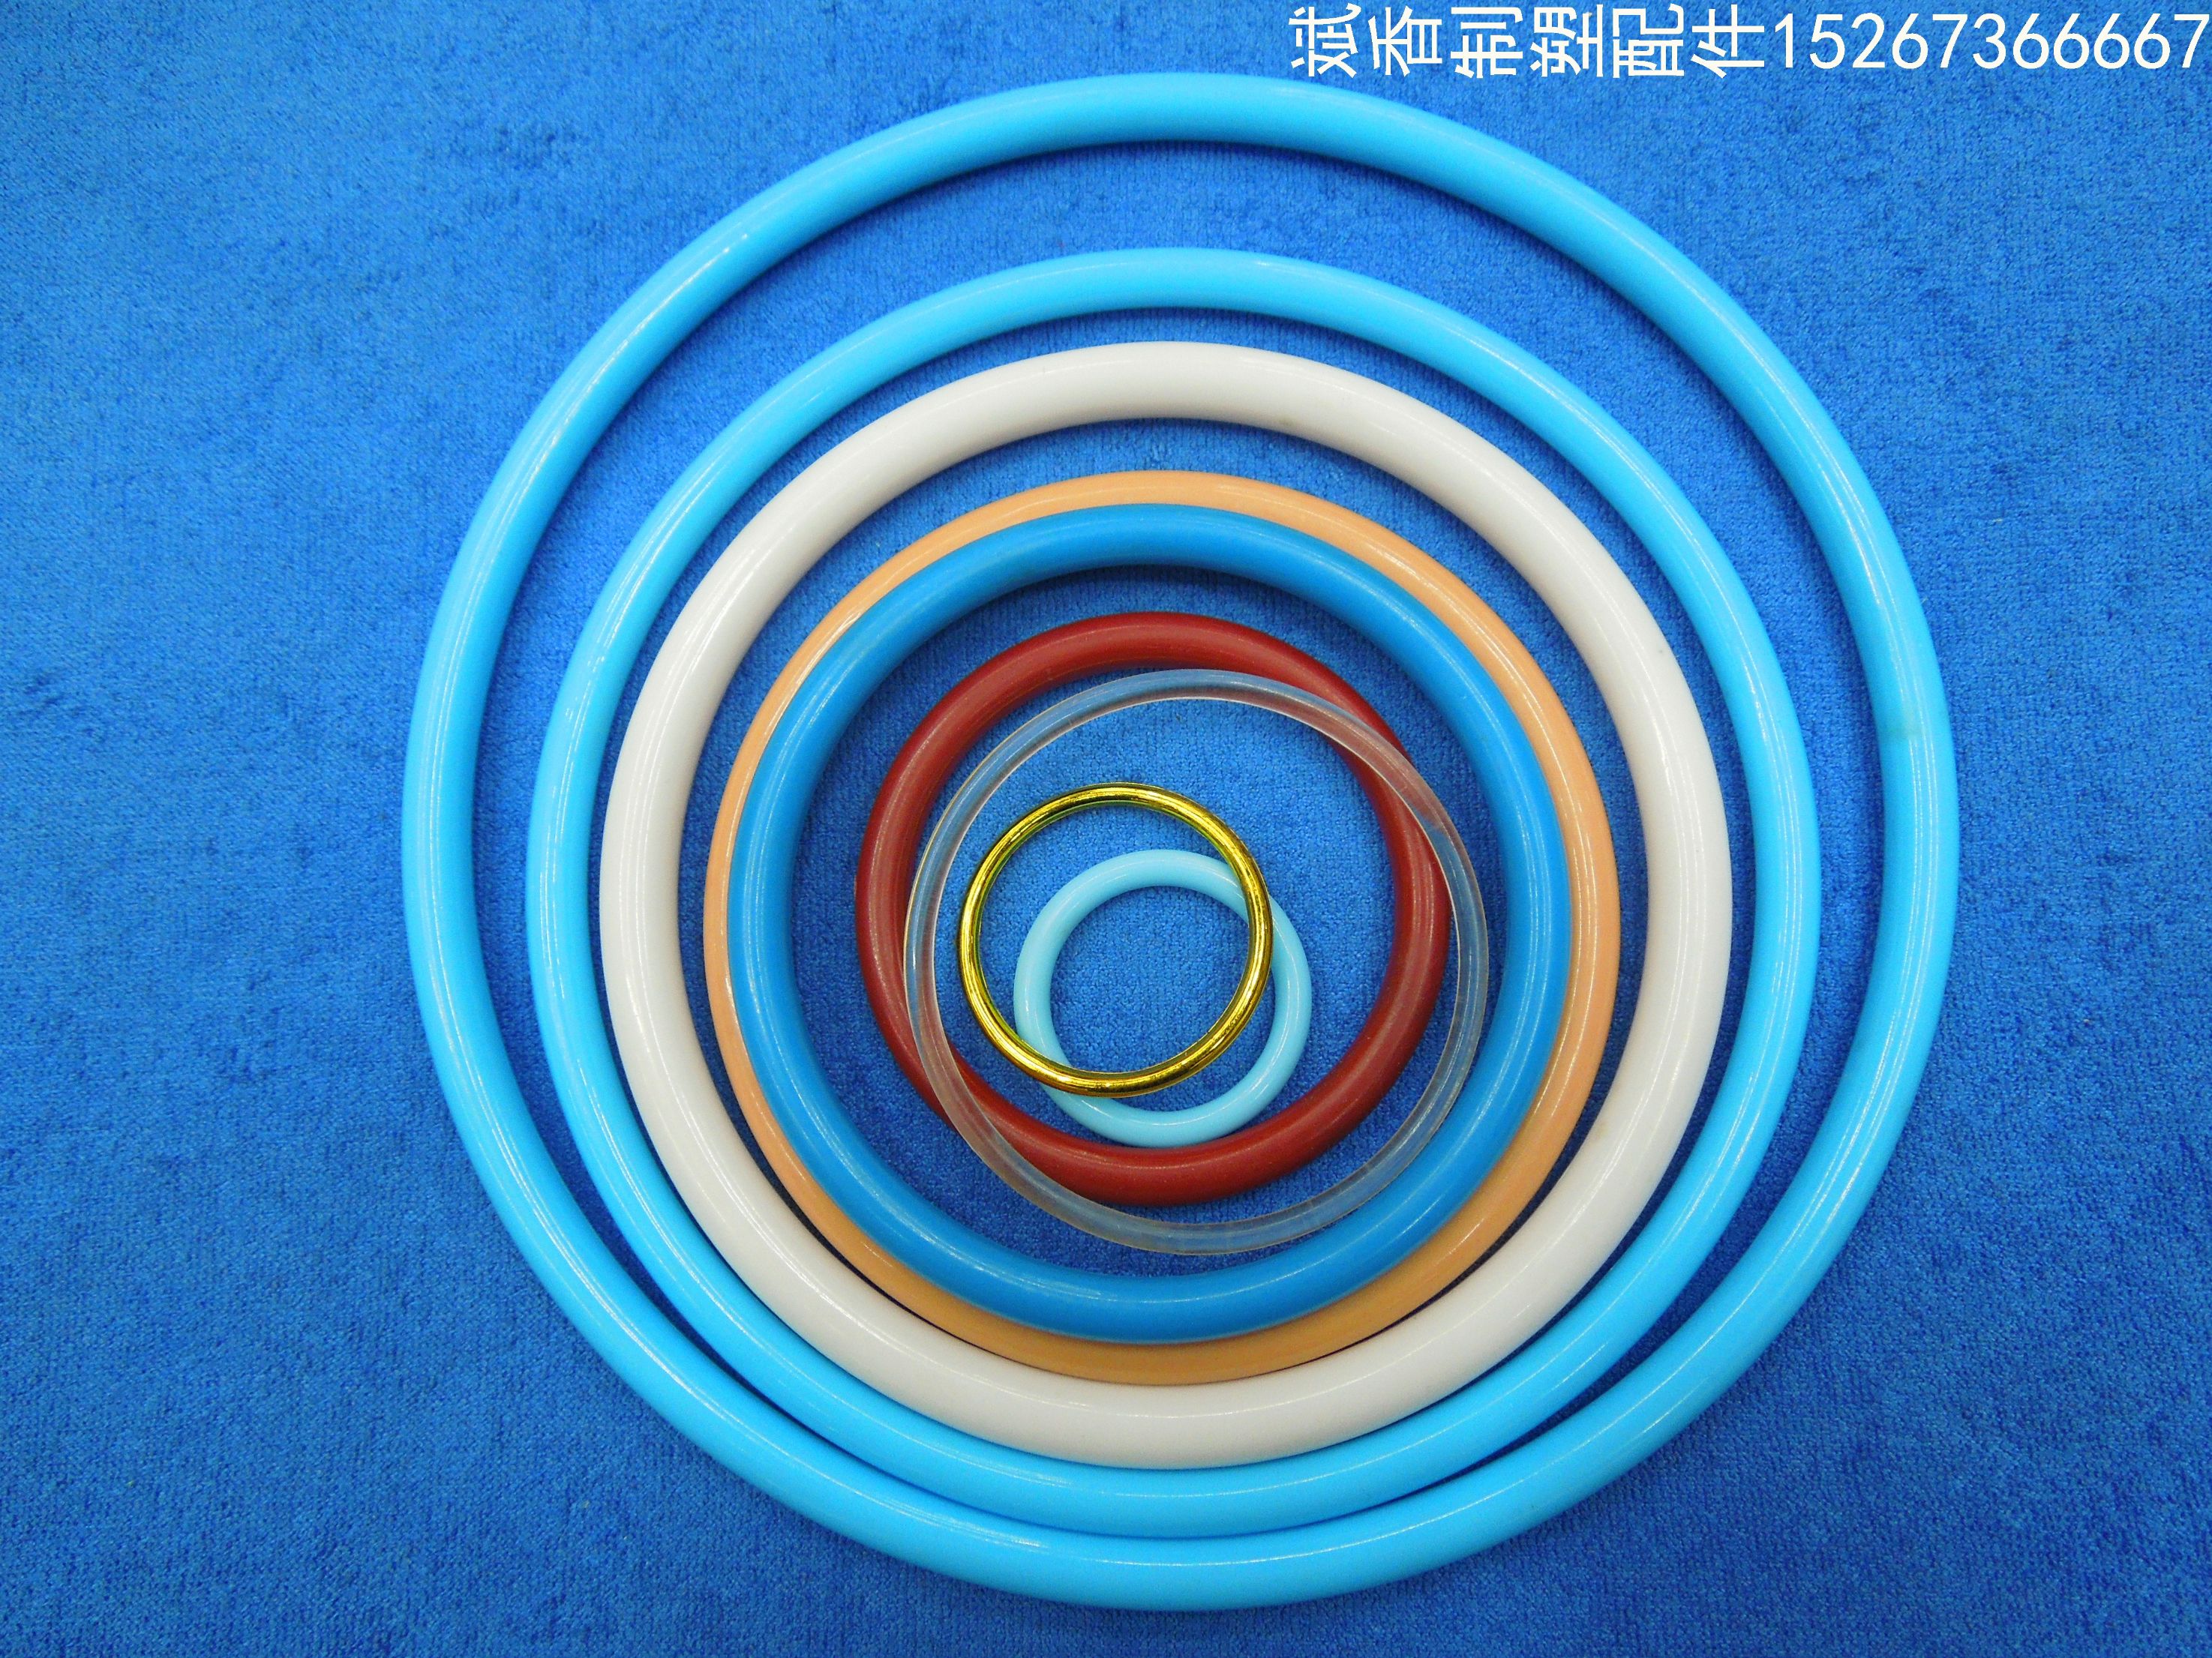 厂家直销 塑料圈 塑料圈扣 可来样定做图